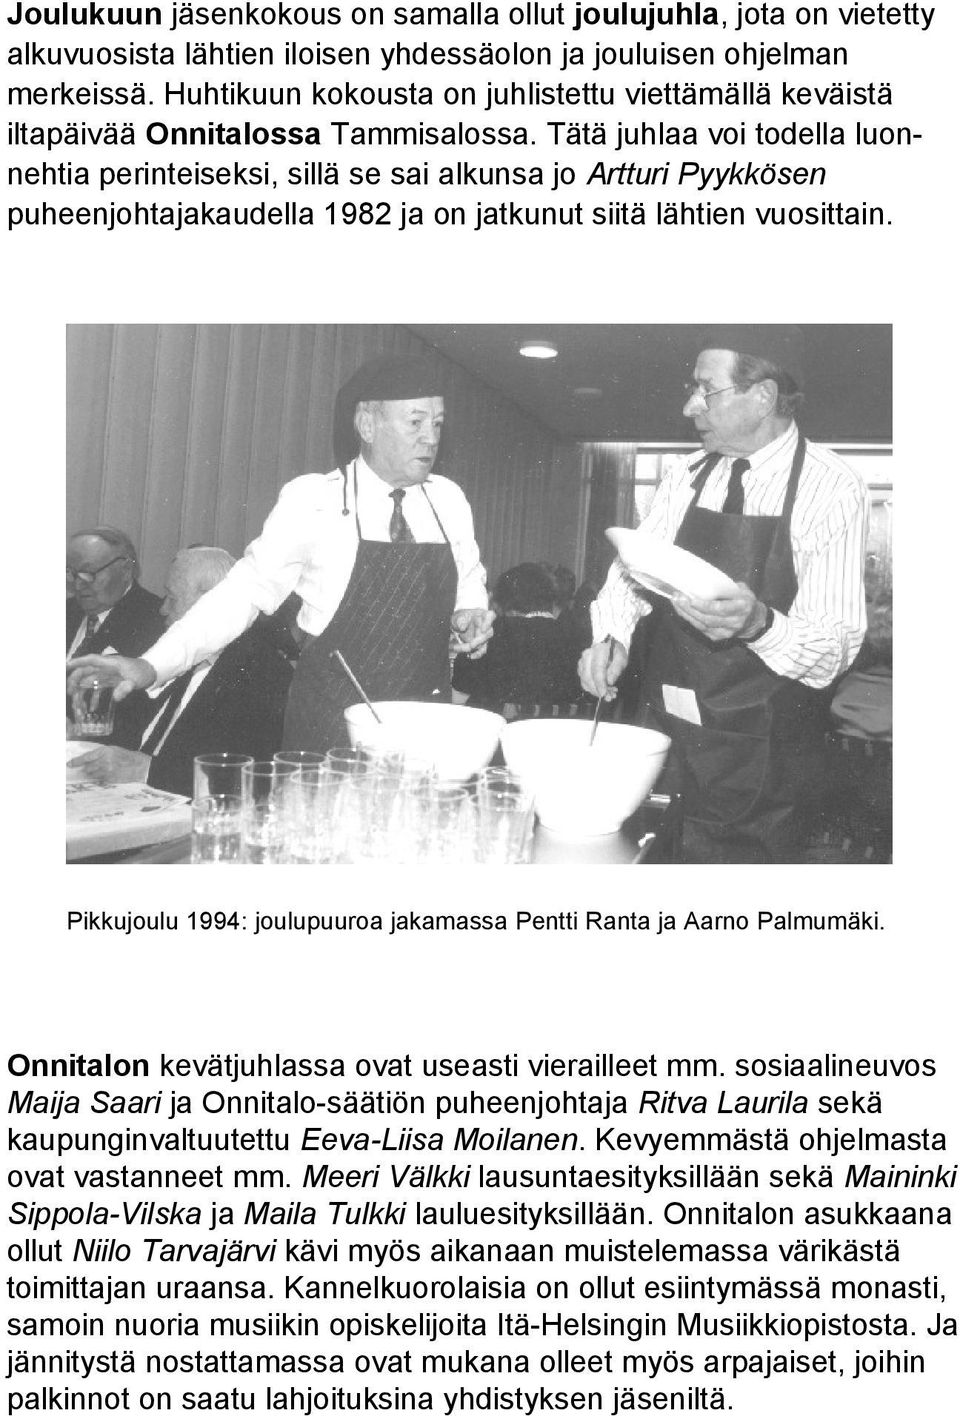 Tätä juhlaa voi todella luonnehtia perinteiseksi, sillä se sai alkunsa jo Artturi Pyykkösen puheenjohtajakaudella 1982 ja on jatkunut siitä lähtien vuosittain.